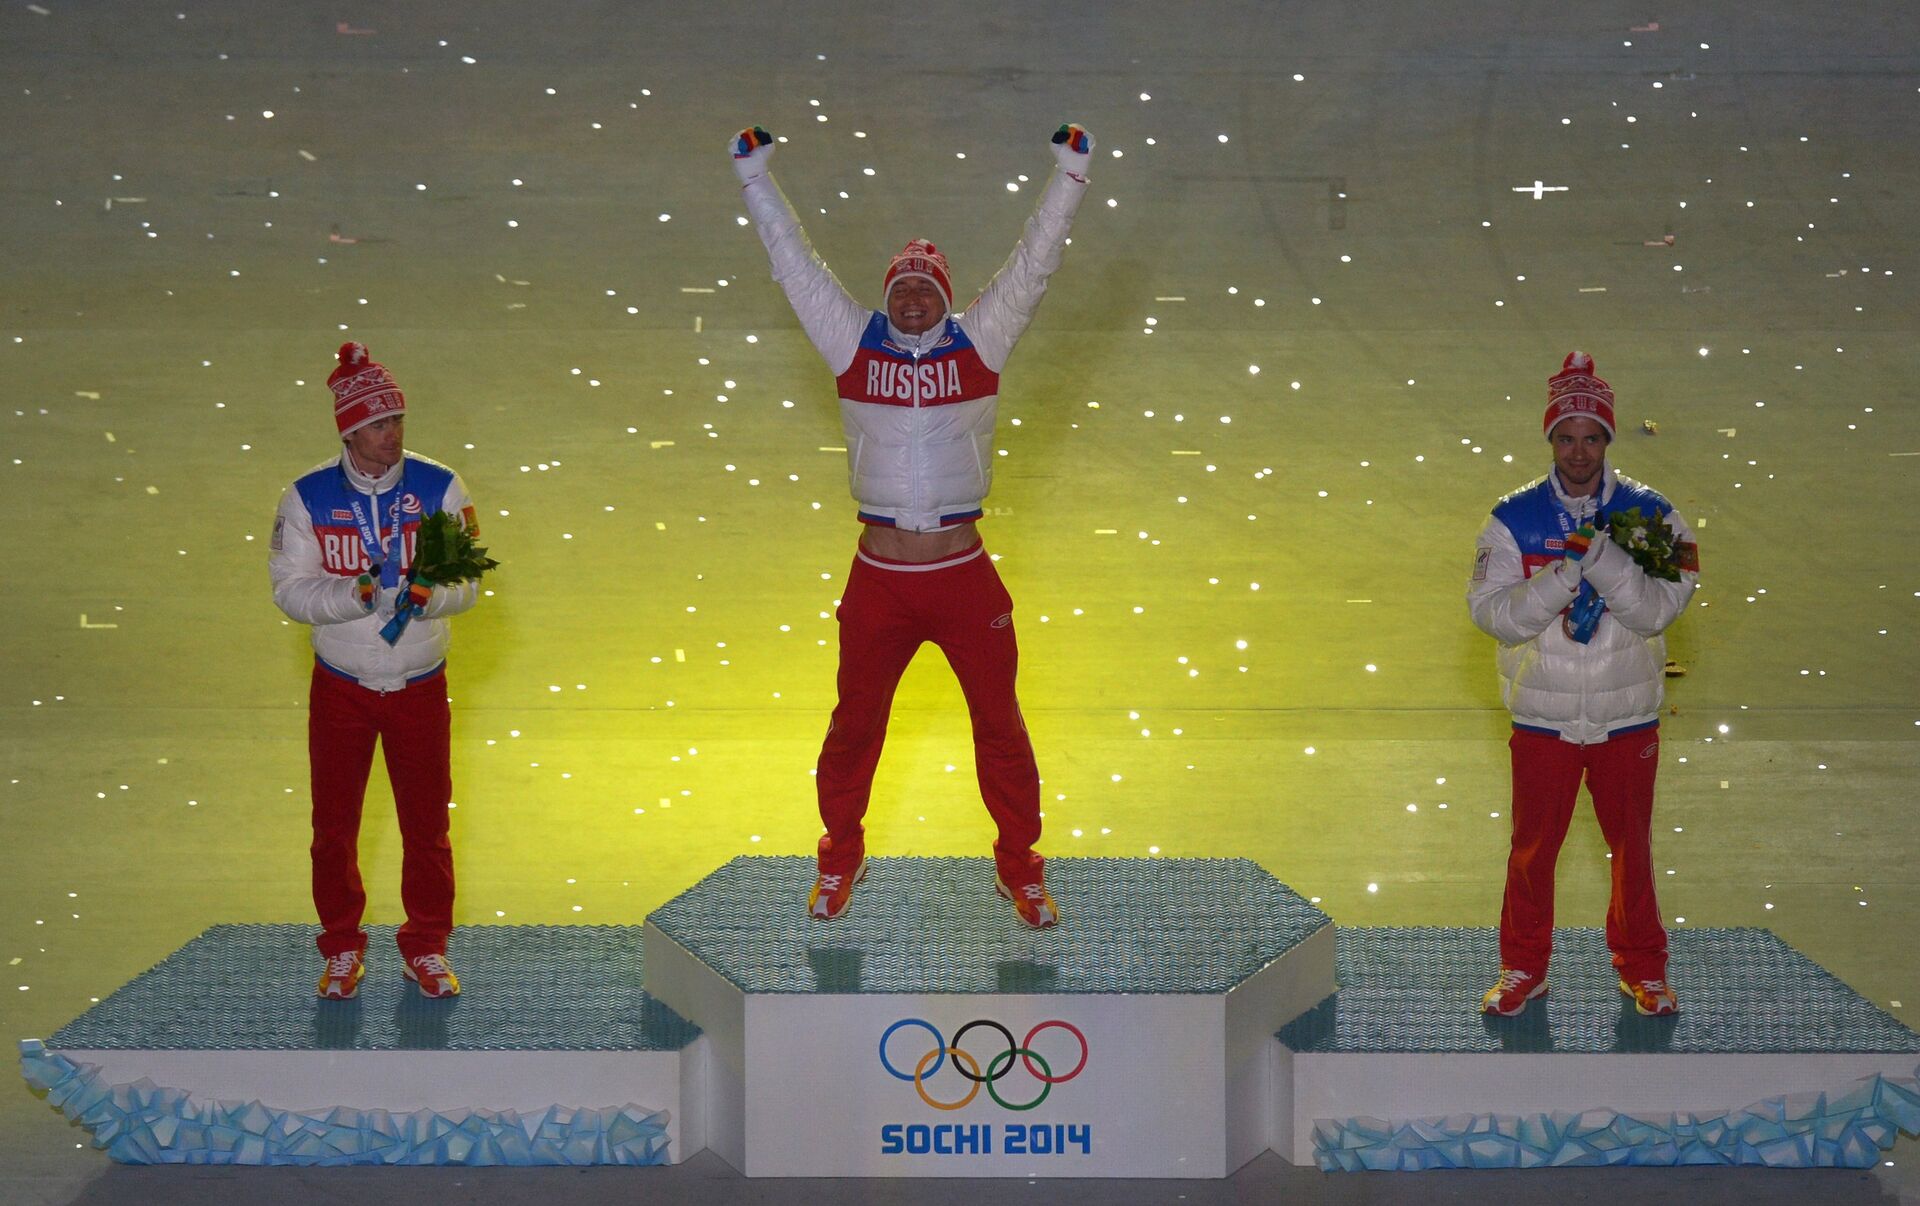 Церемония награждения олимпиады. Церемония закрытия олимпиады в Сочи 2014. Спортсмены на пьедестале.